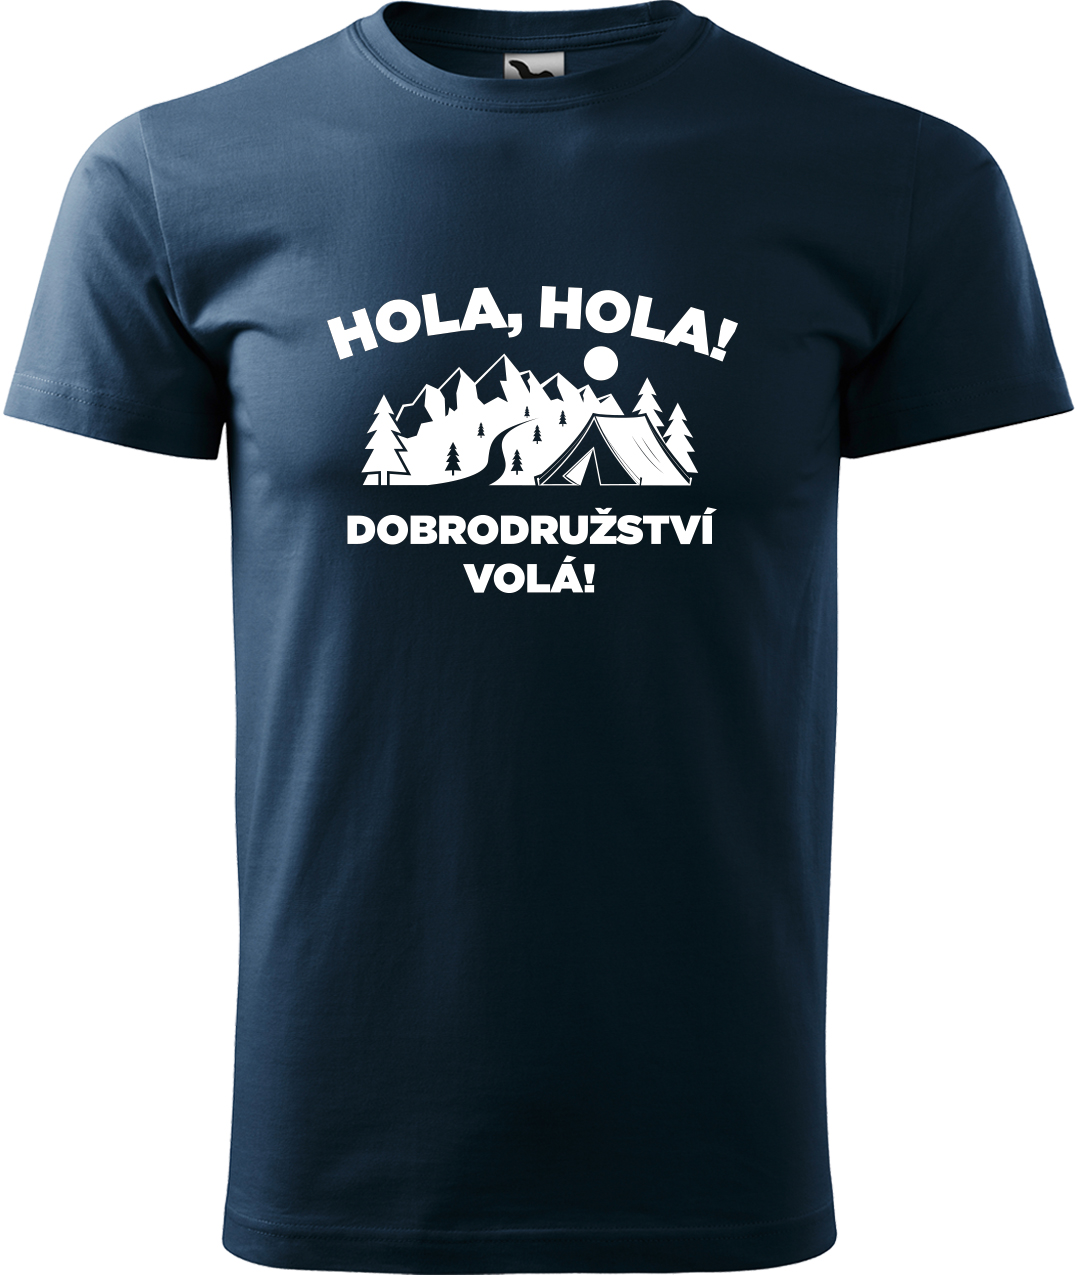 Pánské cestovatelské tričko - Hola hola! Dobrodružství volá! Velikost: 4XL, Barva: Námořní modrá (02), Střih: pánský